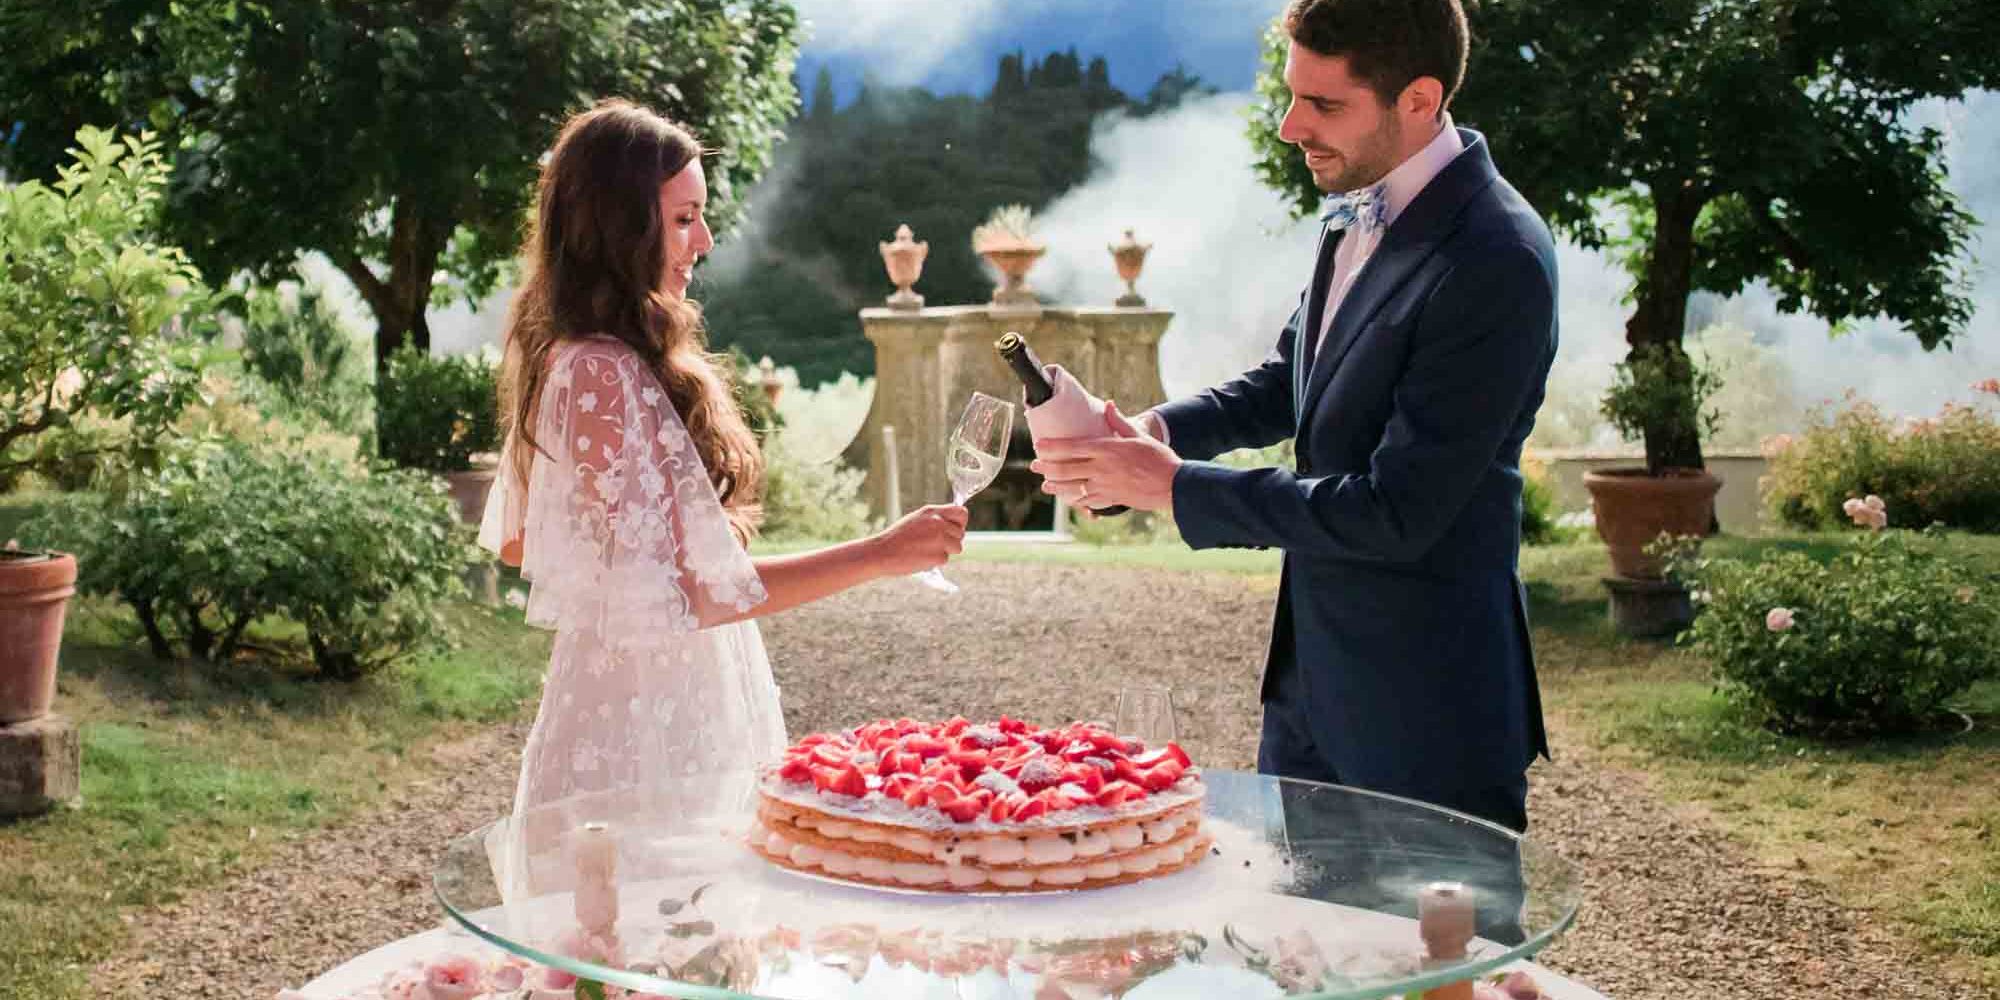 Mille Foglie, Traditional Italian Wedding Cake at Villa Medicea di Lilliano